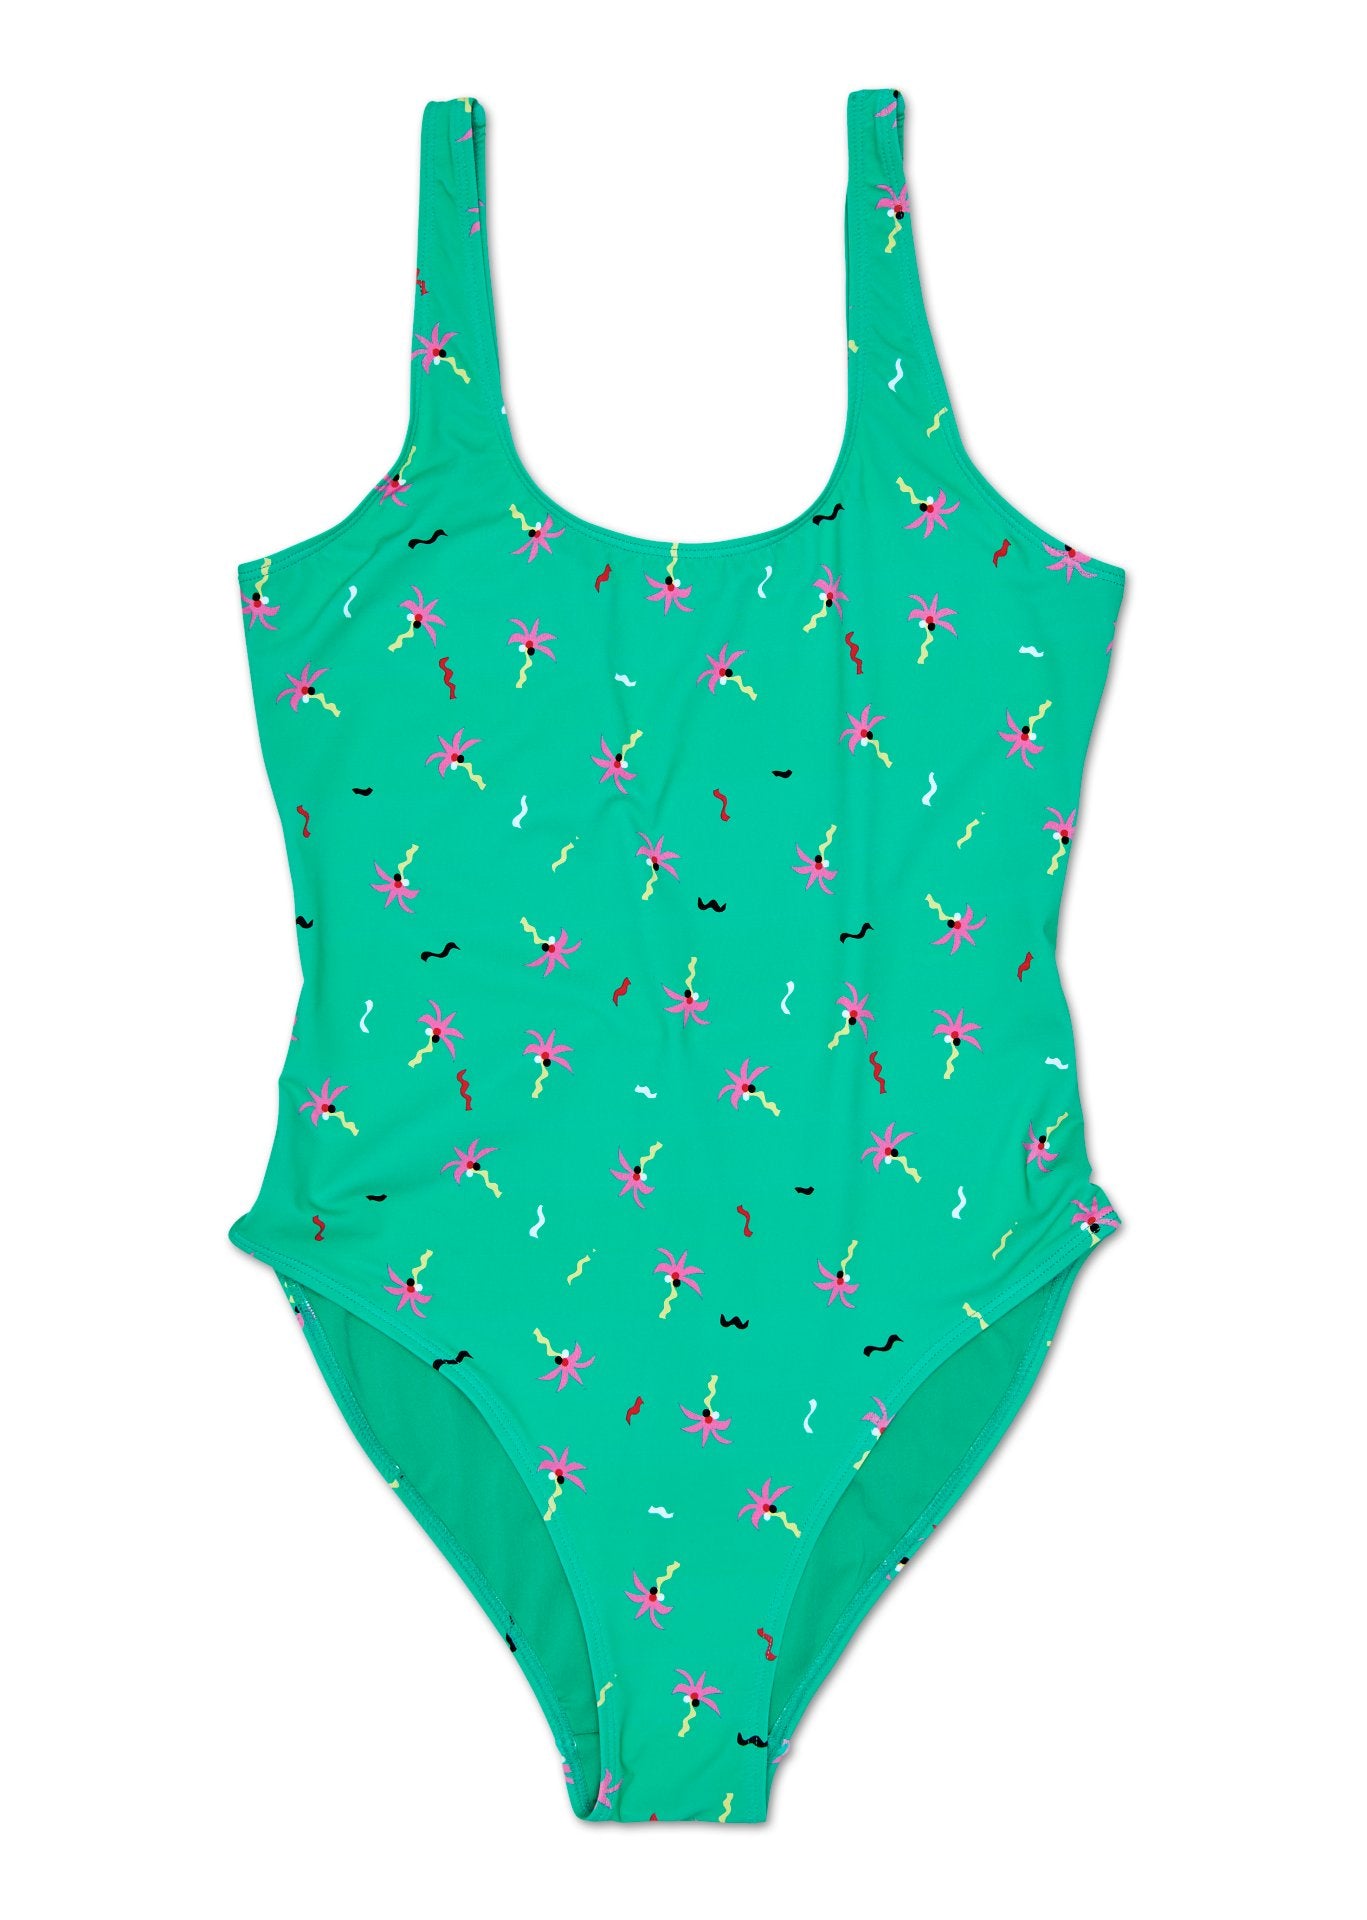 Dámske zelené plavky Happy Socks s palmami a konfetami, vzor Confetti Palm